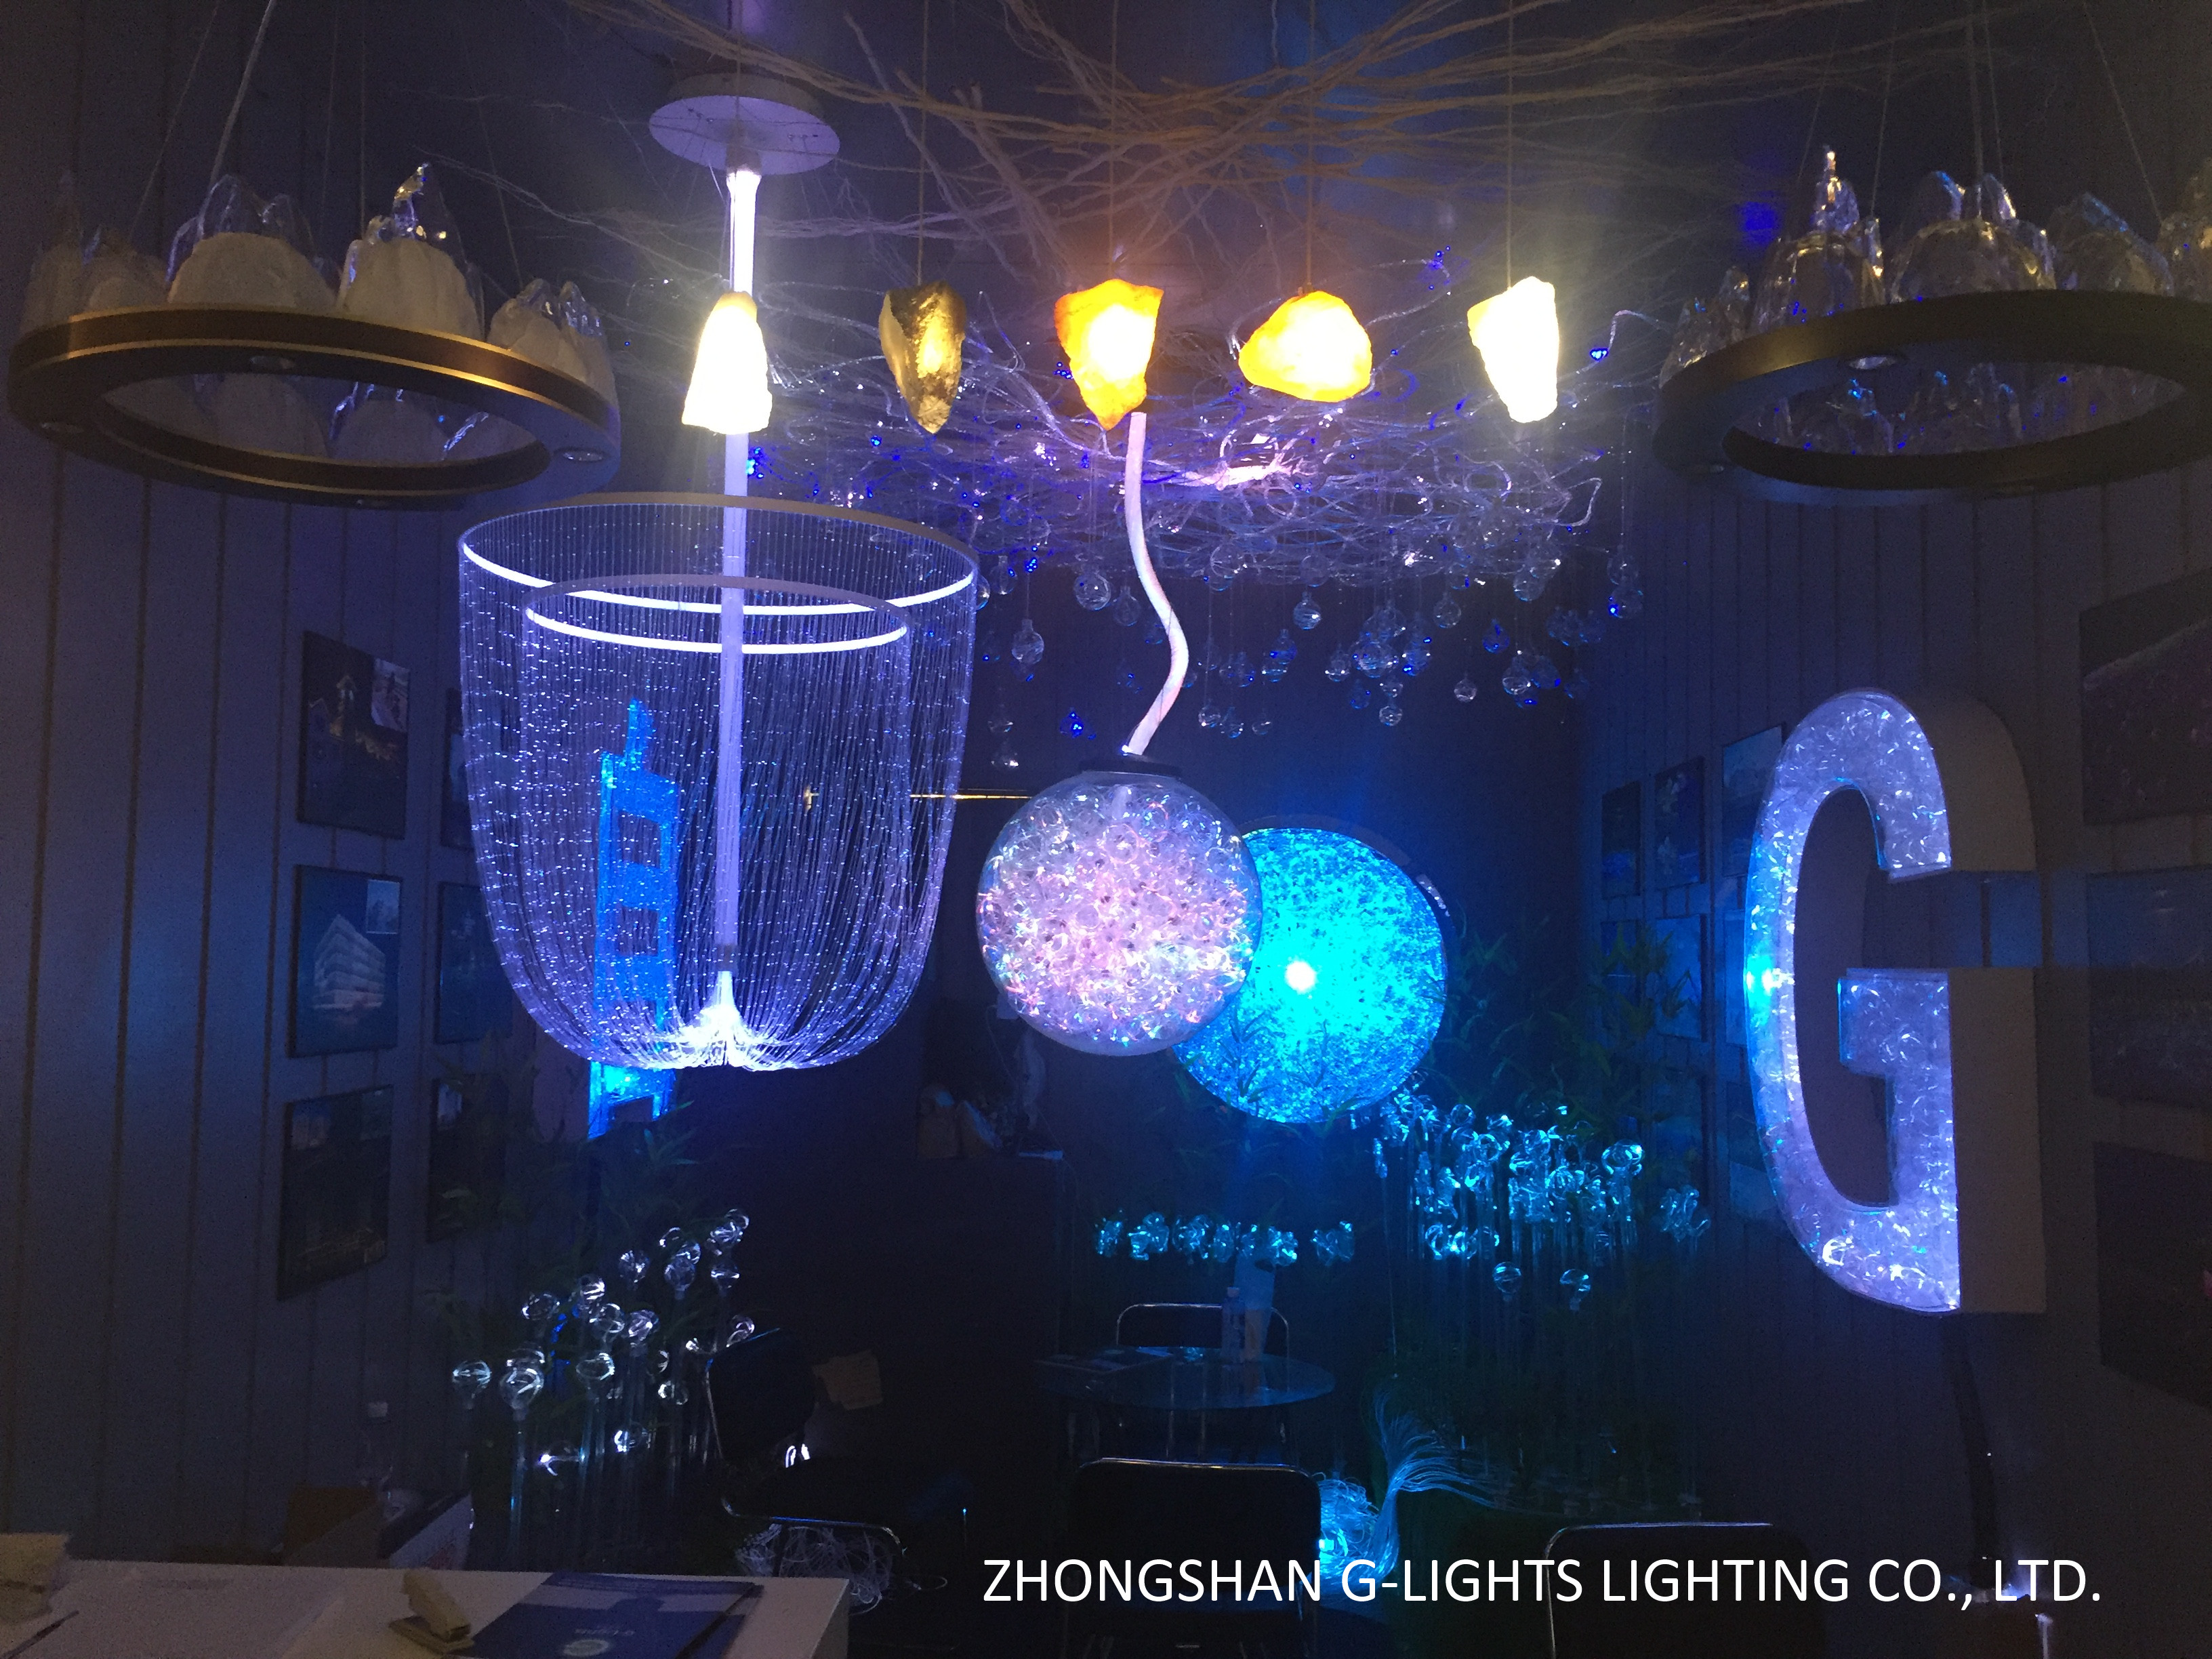 new lighting in HK lighting fair